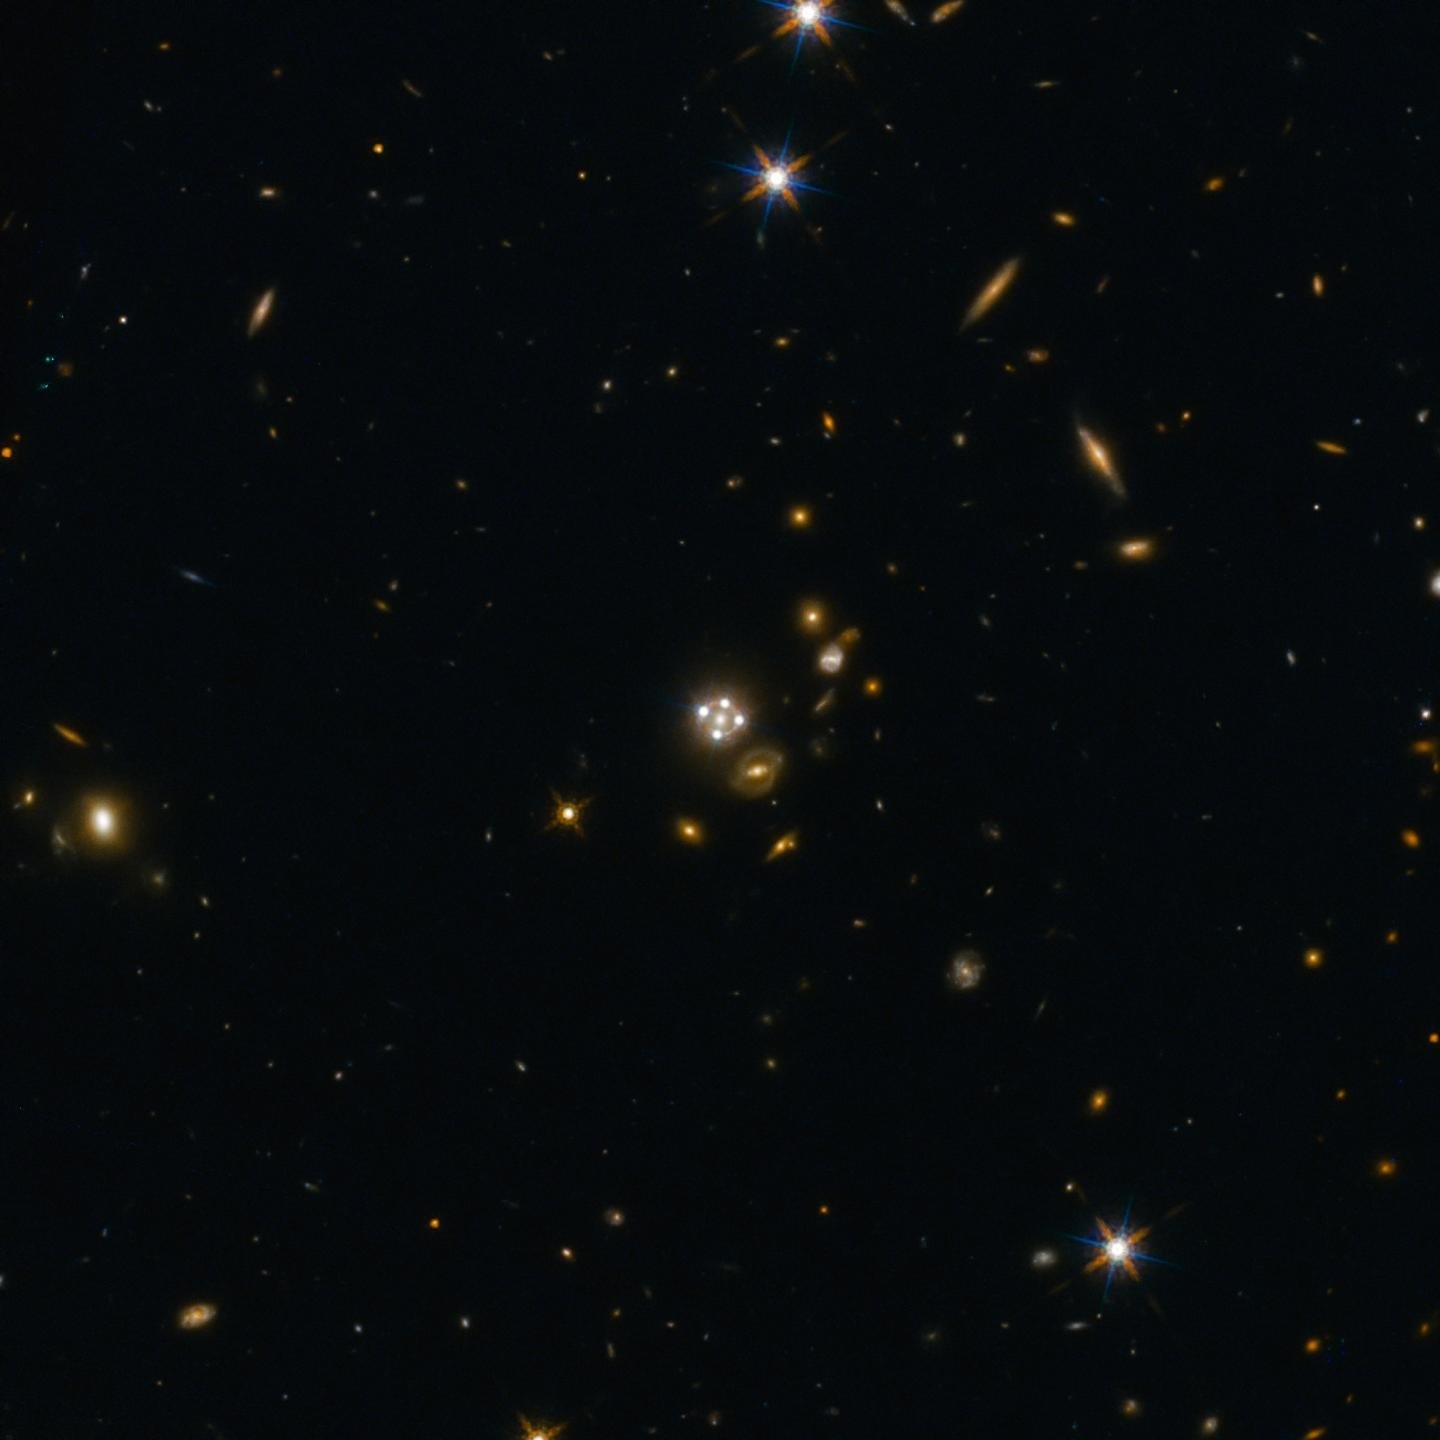 En s’appuyant sur l’effet de lentille gravitationnelle des chercheurs confirment que l’Univers s’étend plus rapidement que prévu